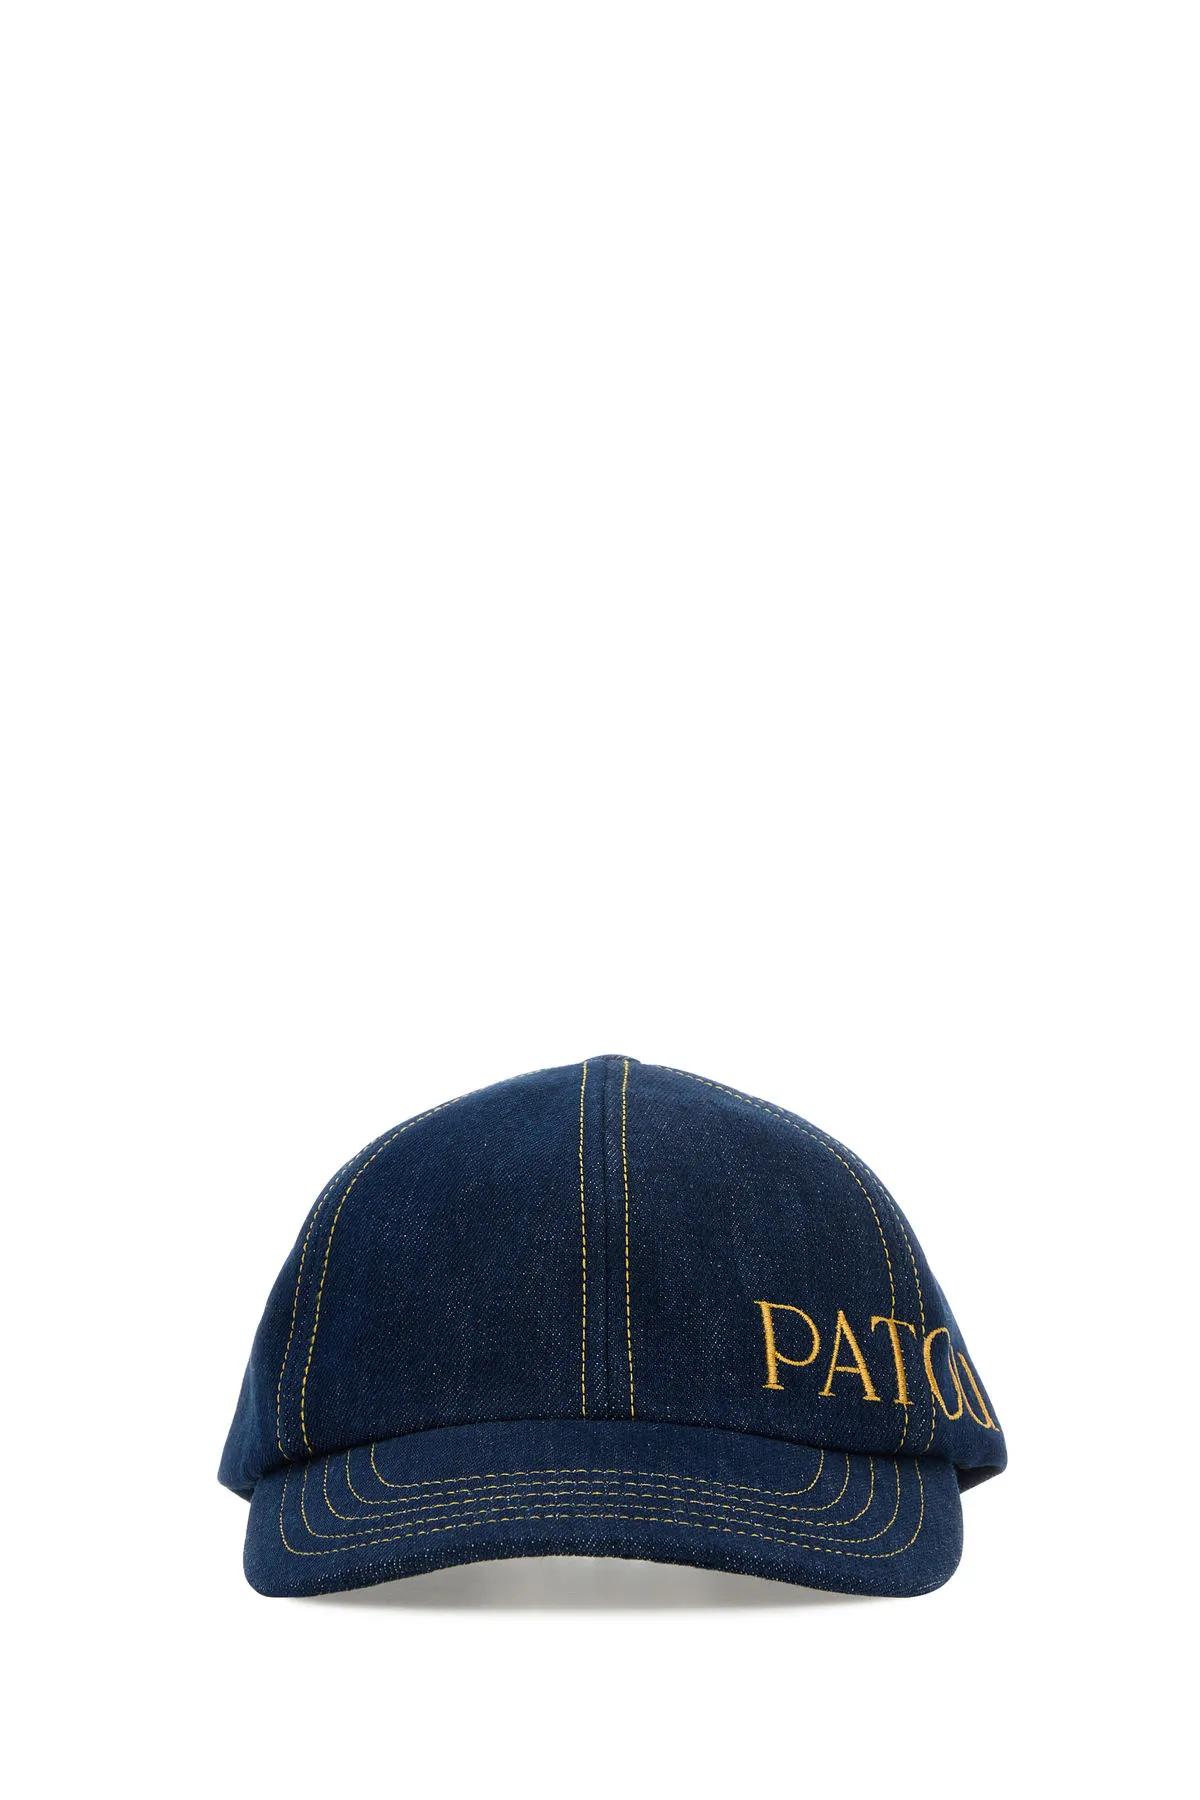 Shop Patou Blue Denim Baseball Cap